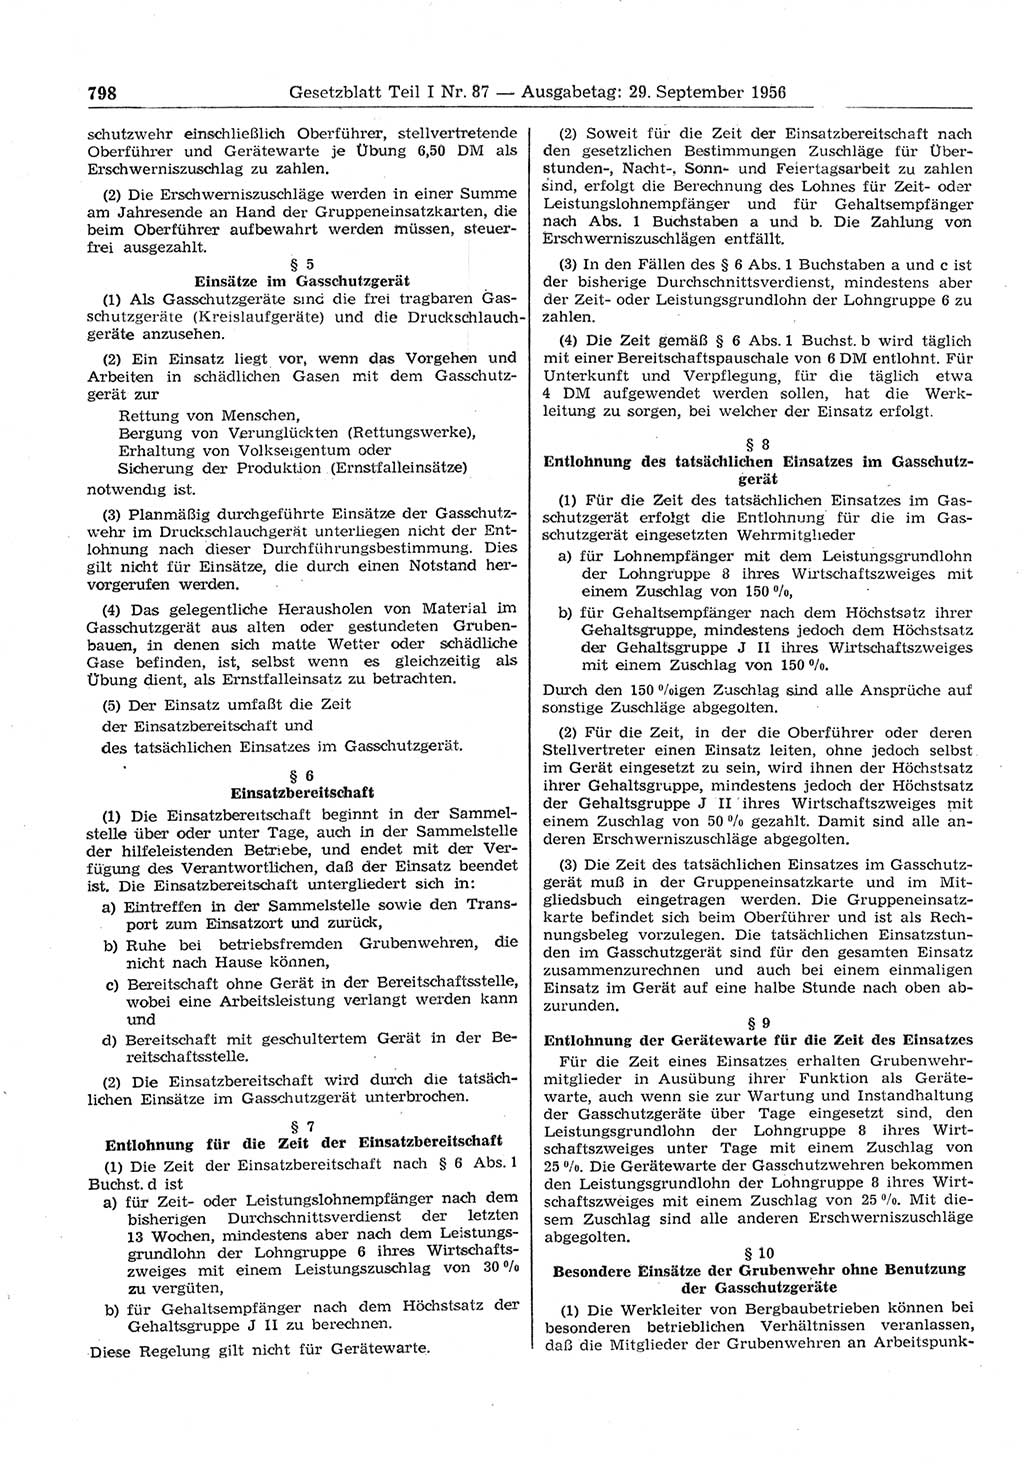 Gesetzblatt (GBl.) der Deutschen Demokratischen Republik (DDR) Teil Ⅰ 1956, Seite 798 (GBl. DDR Ⅰ 1956, S. 798)